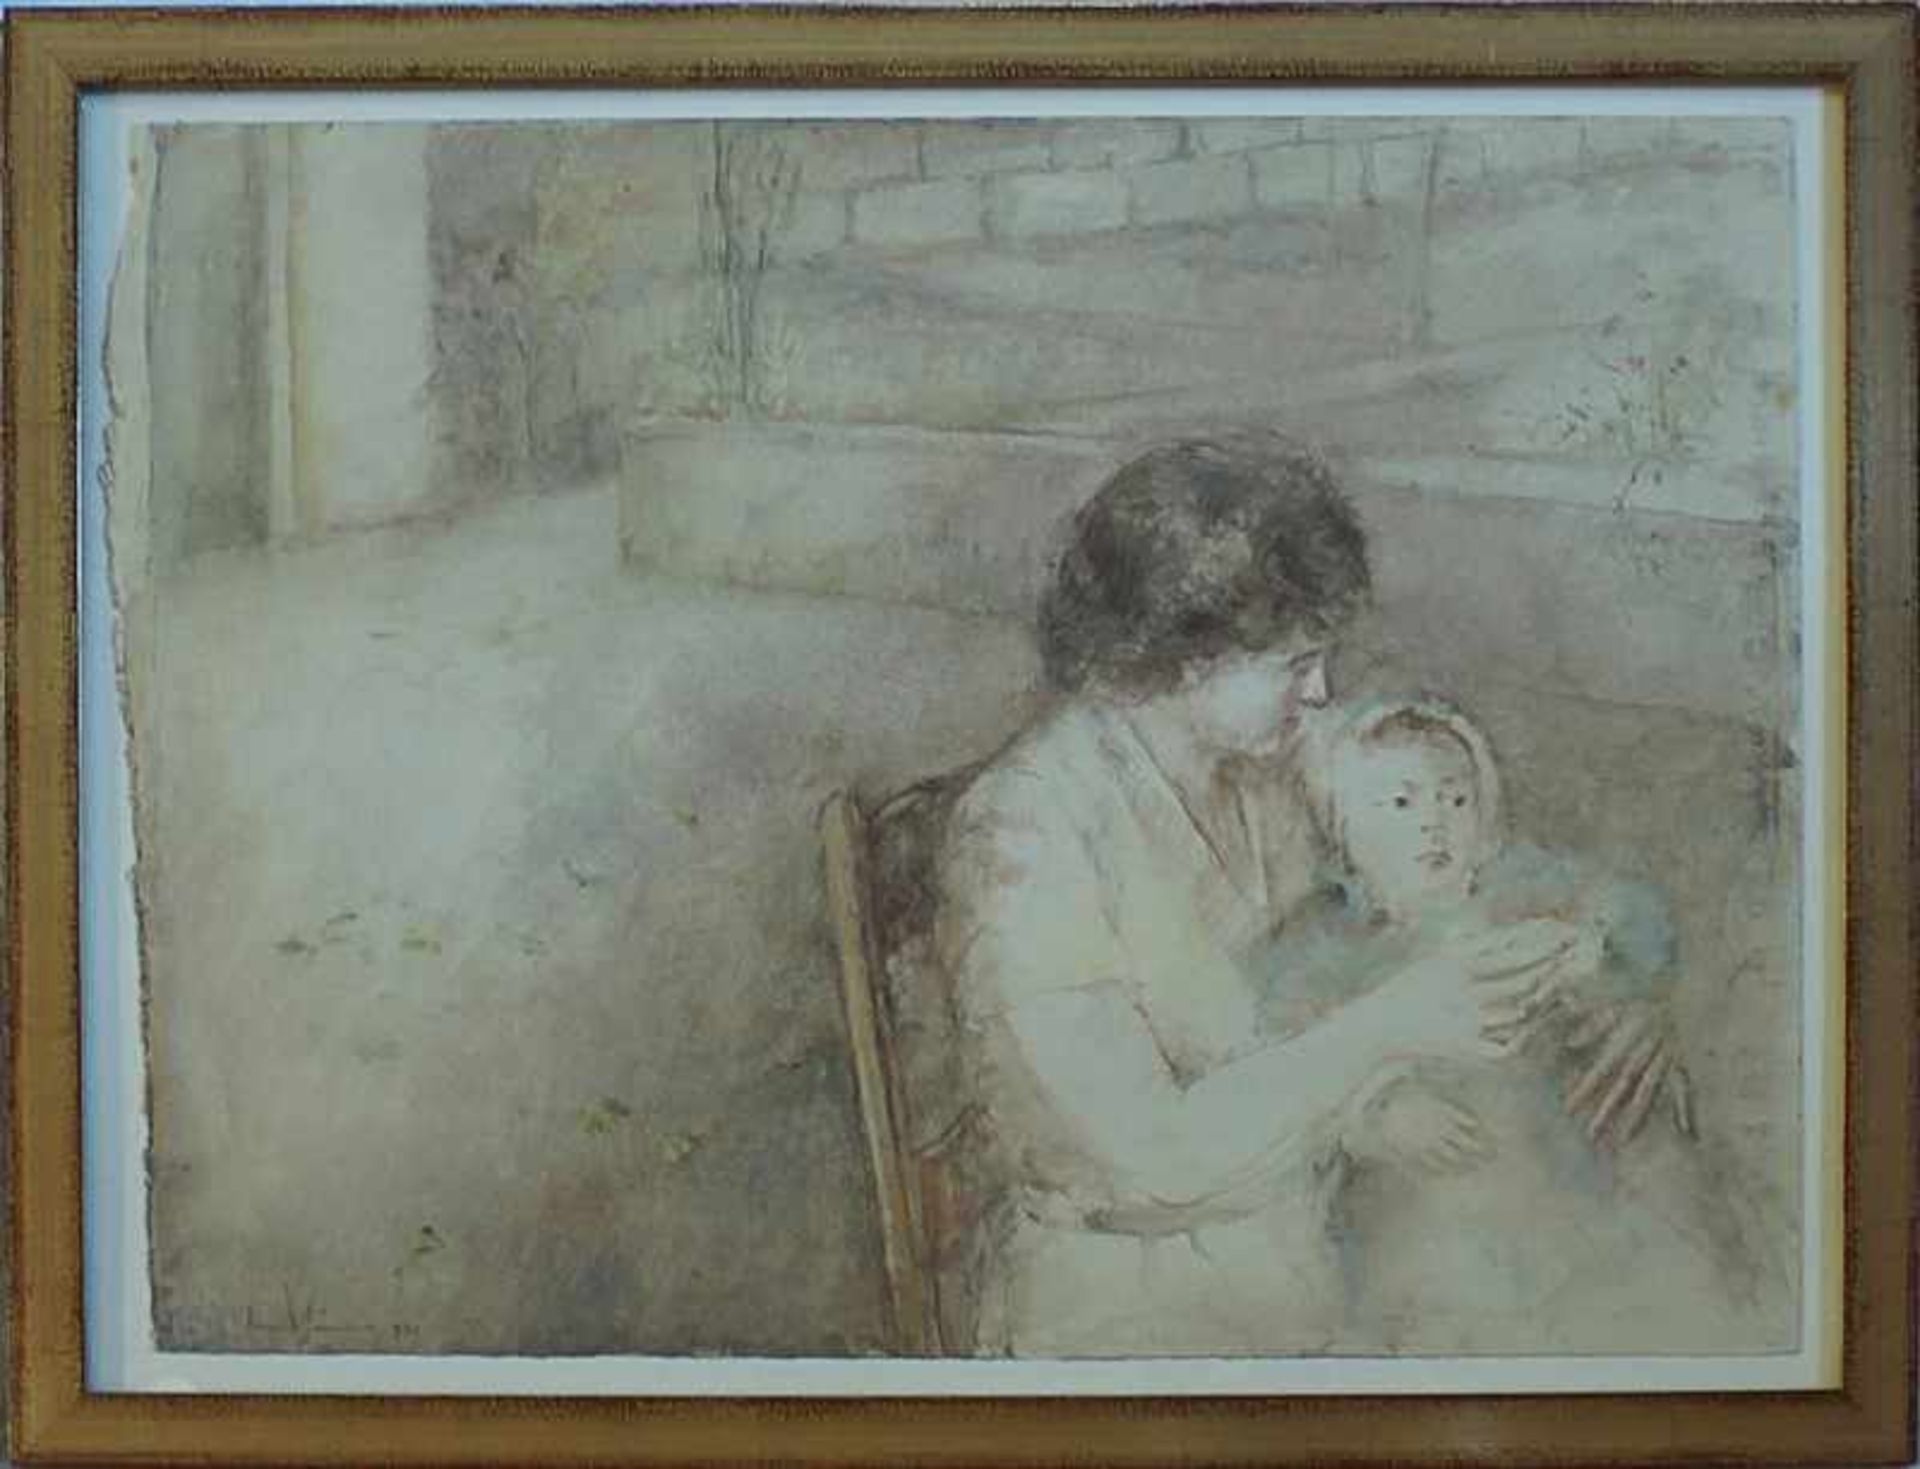 Jaume, Damia geb. 1948 Palma, spanischer Künstler, rs. auf Klebeetikett bez. "Mutter mit Kind",